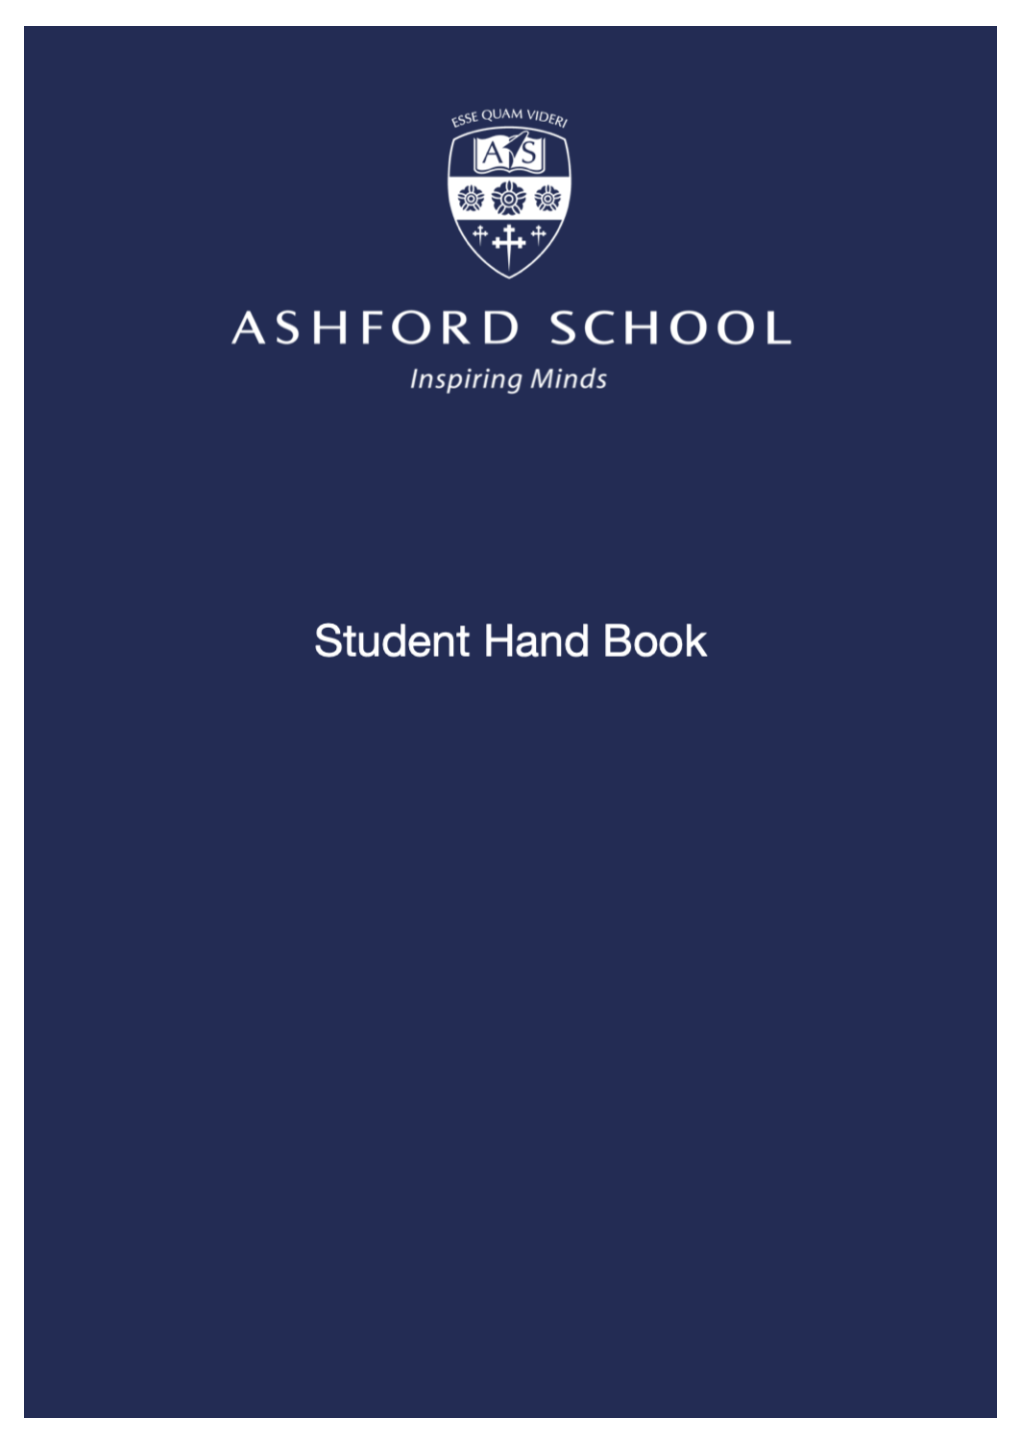 Ashford School Student Handbook 2020 2021.V1 2